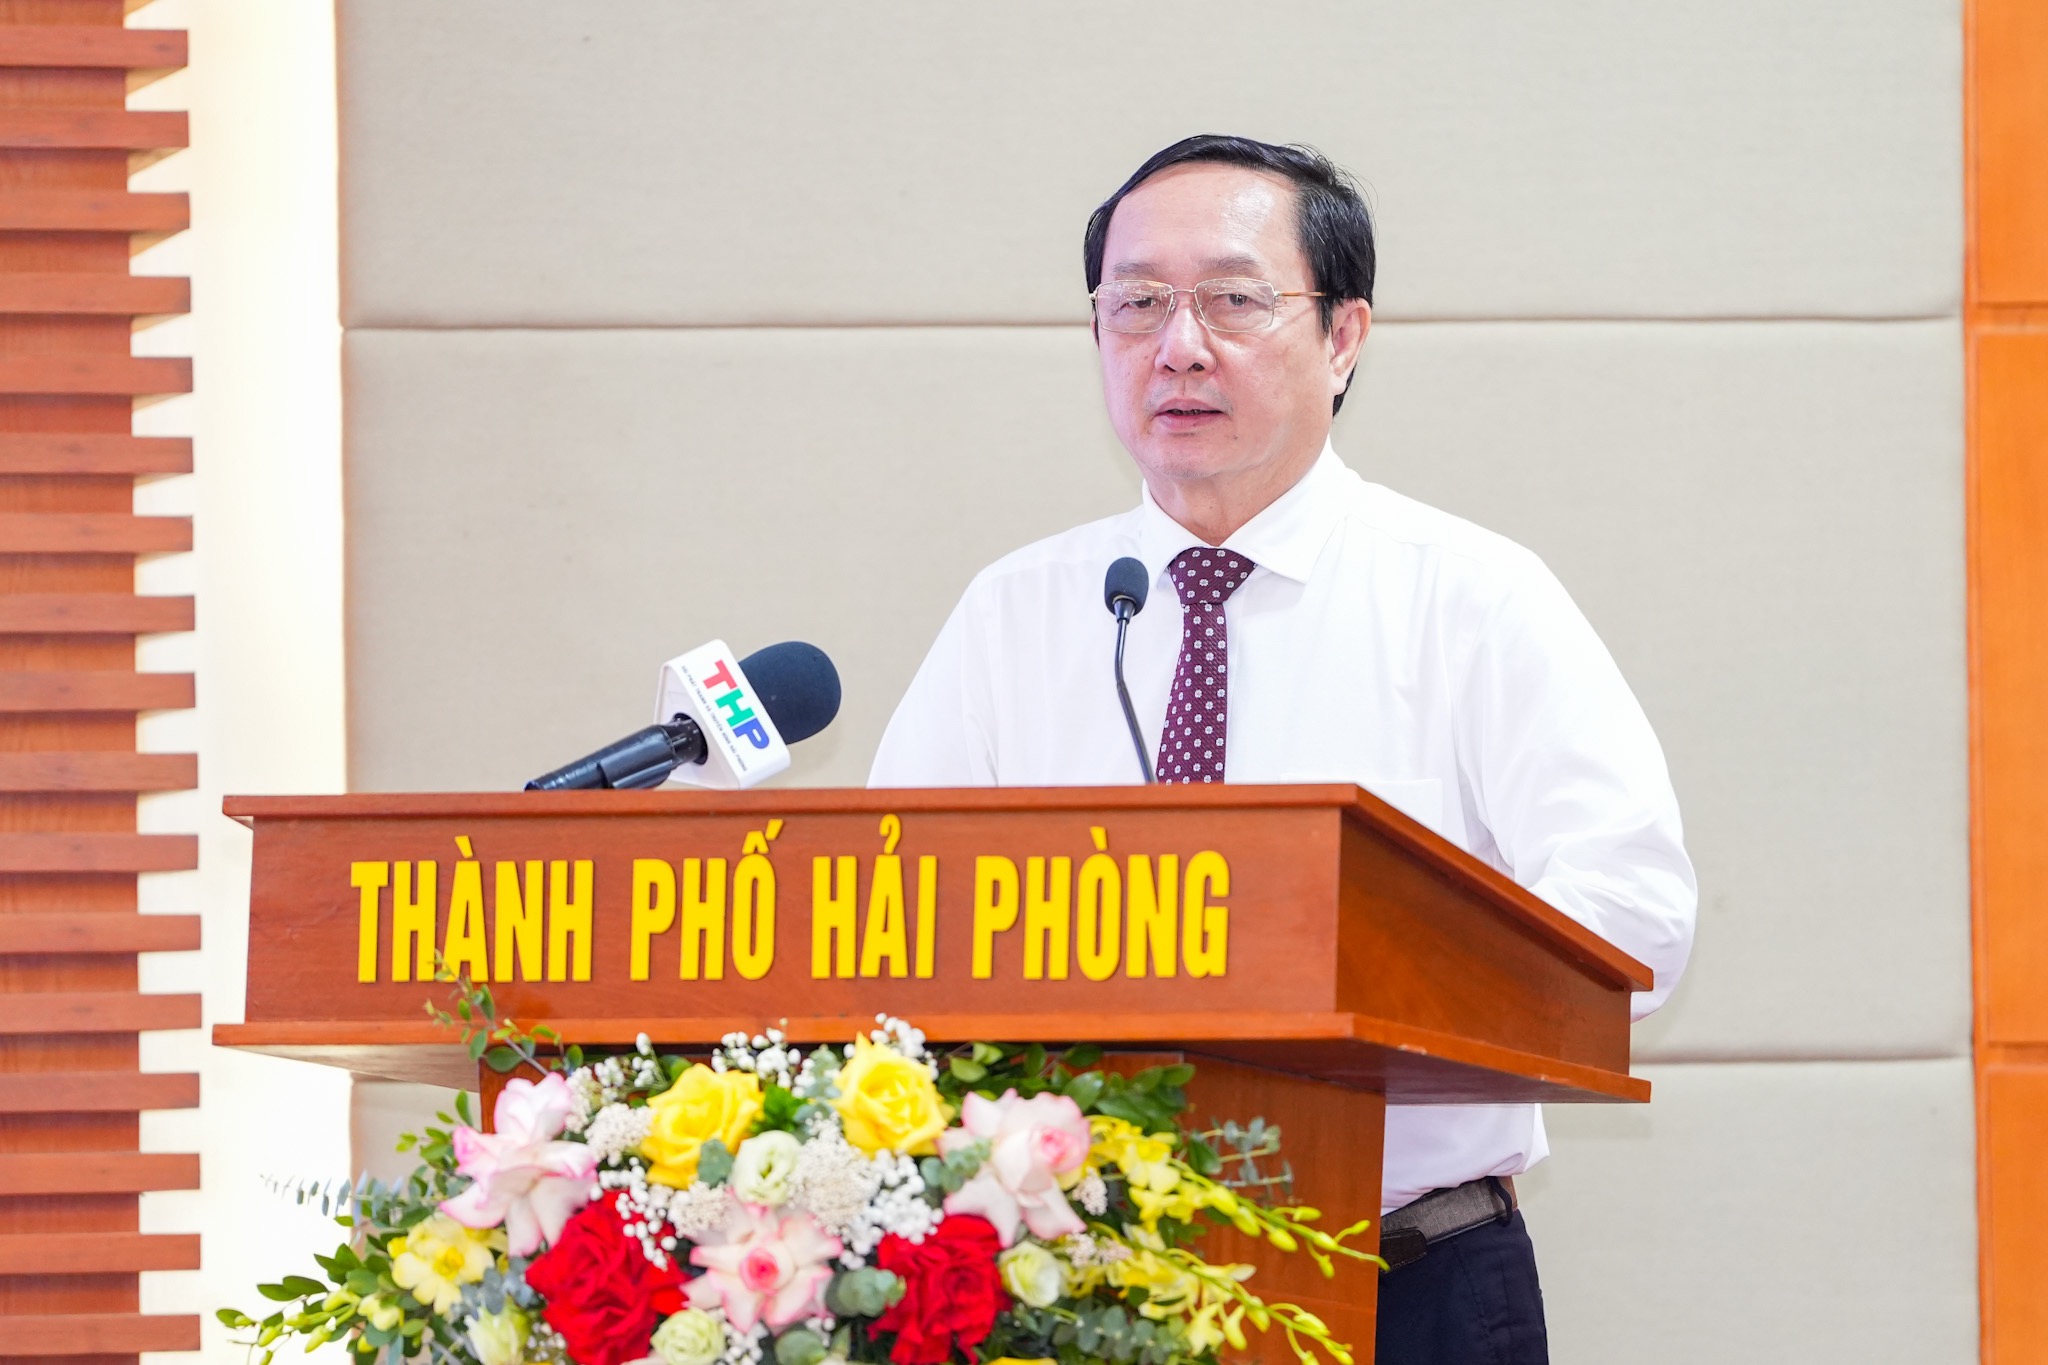 Ông Huỳnh Thành Đạt, Bộ trưởng Bộ Khoa học và Công nghệ phát biểu chỉ đạo tại Hội nghị